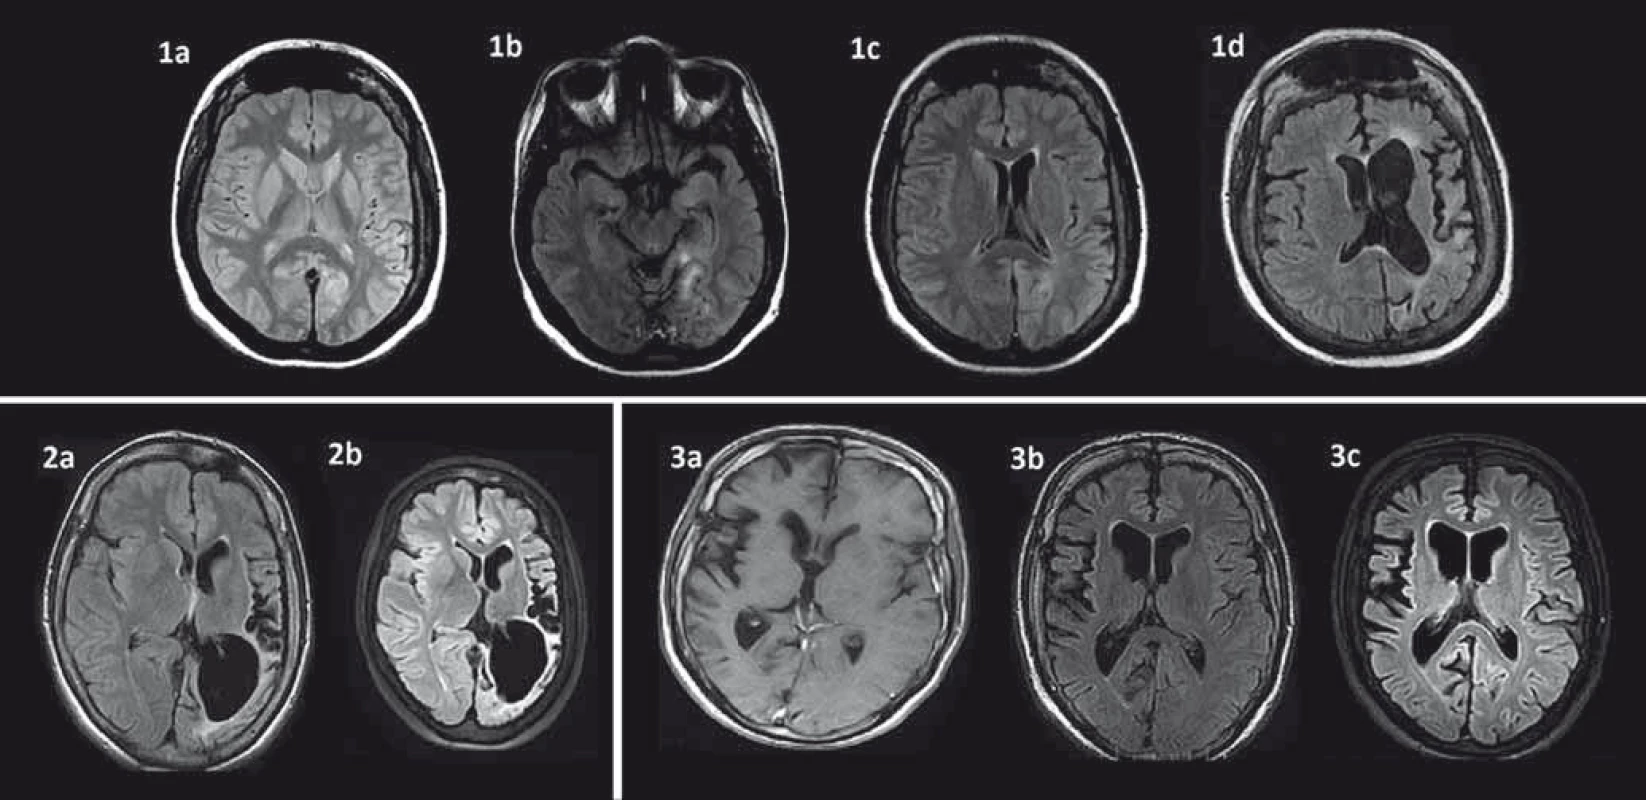 Časový vývoj MR zmien u troch pacientov s Rasmussenovou encefalitídou.
1a: T2W MR mozgu vo veku 24 rokov v čase prvého status epilepticus bez jasných atrofických zmien u pacientky s parciálnymi záchvatmi od 16 rokov; 1b: FLAIR MR s hyperintenzívnym signálom temporookcipitálne vľavo vo veku 29 rokov u tej istej pacientky; 1c: FLAIR MR incipientná atrofia v oblasti caput nuclei caudati vľavo vo veku 29 rokov u tej istej pacientky; 1d: FLAIR MR vo veku 34 rokov výrazná progresia atrofie ľavej mozgovej hemisféry s klinickou progresiou do reziduálneho štádia s ťažkou pravostrannou spastickou hemiparézou a afáziou, prevažne expresívnou, vyhasínanie epileptických záchvatov; 2a: FLAIR MR u 25-ročnej pacientky s dominujúcou atrofiou posteriórne vľavo s anamnézou parciálnych záchvatov od 6 rokov, prekonaným prvým status epilepticus vo veku 20 rokov s aktívnou epilepsiou a minimálnym neurologickým deficitom; 2b: FLAIR MR vo veku 28 rokov výrazná progresia atrofie v oblasti ľavej hemisféry dominujúca parietookcipitálne, minimálny neurologický deficit; 3a: FLAIR MR u 19-ročného pacienta s ľahkou atrofiou predominantne centrálne v oblasti pravej hemisféry (prvé parciálne záchvaty vo veku 17 rokov a prvý status epilepticus vo veku 18 rokov); 3b: FLAIR MR – 31-ročný – malá progresia atrofie centrálne vpravo (pre ťažkú farmakorezistetntnú epilepsiu s minimálnym neurologickým deficitom po zlyhaní predošlej imunoterapie indikovaný na biologickú liečbu rituximabom); 3c: FLAIR MRI – 34-ročný – v MR bez výraznejšej progresie atrofie pravej hemisféry, tri roky stabilizovaný na liečbe rituximabom (sporadické parciálne záchvaty, bez progresie neurologického deficitu).
Pozn.: Prezentované so súhlasom Rádiologickej kliniky LF UK, SZU a UN Bratislava, Nemocnica ak. L. Dérera.
Fig. 1. Time evolution of MRI changes in three patients with Rasmussen’s encephalitis.
1a: T2W MRI of a 24-year-old female patient following the first status epilepticus, no brain atrophy (first partial seizures occurred at the age of 16 years); 1b: FLAIR MRI – hyperintense signal in the temporal-occipital region on the left in the same patient aged 29; 1c: FLAIR MRI – incipient atrophy in the region of caput nuclei caudati on the left in the same patient aged 29; 1d: FLAIR MRI of the same patient aged 34 with marked progression of atrophy of the left hemisphere; 2a: FLAIR MRI with brain atrophy predominantly in the posterior region of the left hemisphere in a 25-year-old patient (the first epileptic seizure at 6 years of age, the first status epilepticus at 20 years of age) with active epilepsy and minimal neurologic deficit; 2b: FLAIR MRI at 28 year of age with marked progression of the left hemisphere atrophy, predominantly in the posterior region, minimal neurological deficit; 3a: FLAIR MRI in a 19-year-old patient with mild atrophy of the right hemisphere in the central region (first seizures as a 17-year-old, the first status epilepticus as an 18-year-old); 3b: FLAIR MRI – 31-year-old with mild progression of the brain batrophy on the right (due to severe refractory epilepsy and mild neurological deficit, started biological treatment with rituximab after failure of previous immunotherapy); 3c: FLAIR MRI – 34-year-old – only mild progression of the right hemisphere atrophy, three years under rituximab, epilepsy under control (sporadic partial seizures without neurological decline).
Note: with the agreement of the Dept. of Radiology, Medical Faculty Comenius University and University Hospital, Dérer´s Hospital, Bratislava.